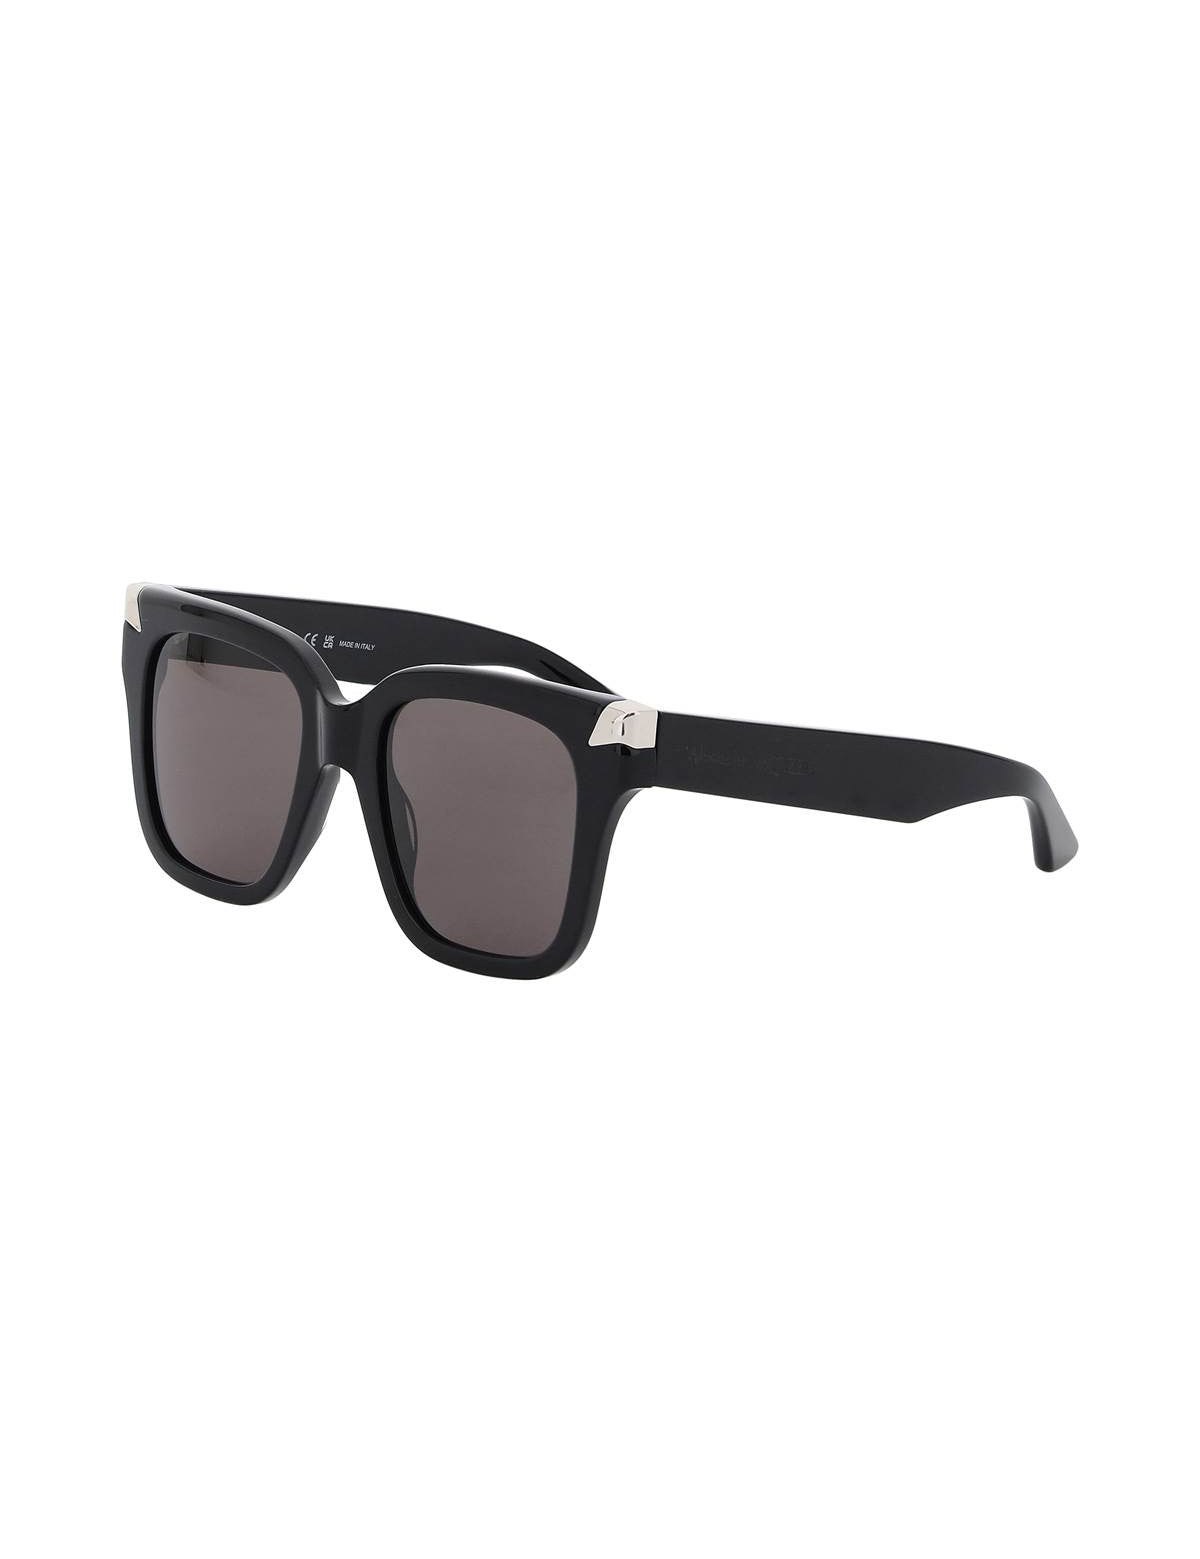 alexander-mcqueen-punk-oversized-sunglasses_85920aac-6bf5-4e44-b2d2-934c0544816f.jpg